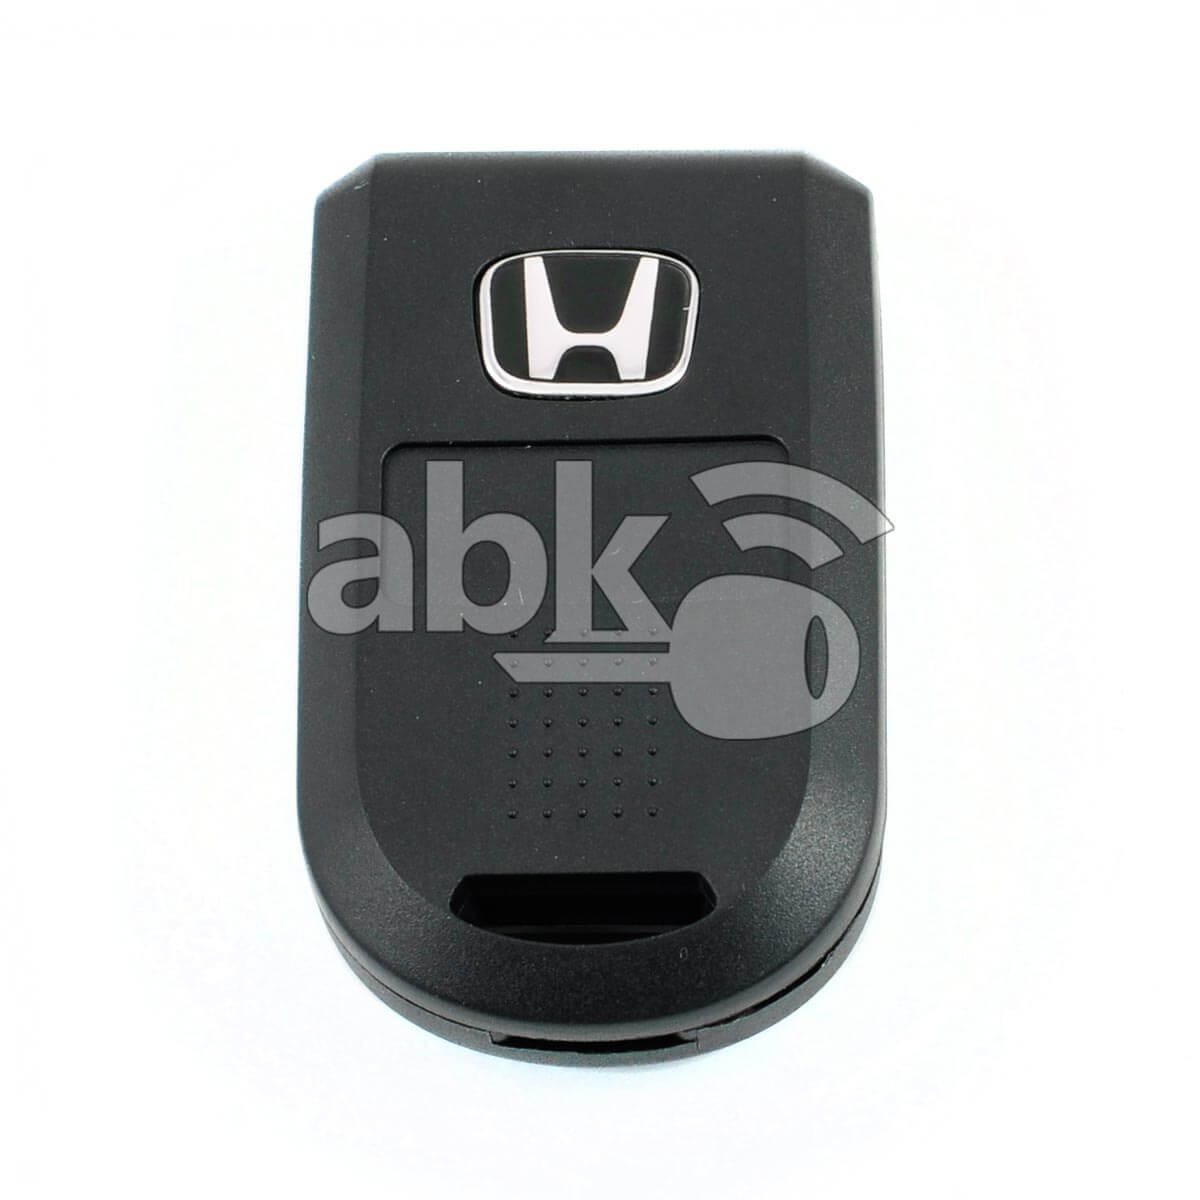 Honda Odyssey 2004+ Remote Control Cover 5Buttons - ABK-3869 - ABKEYS.COM